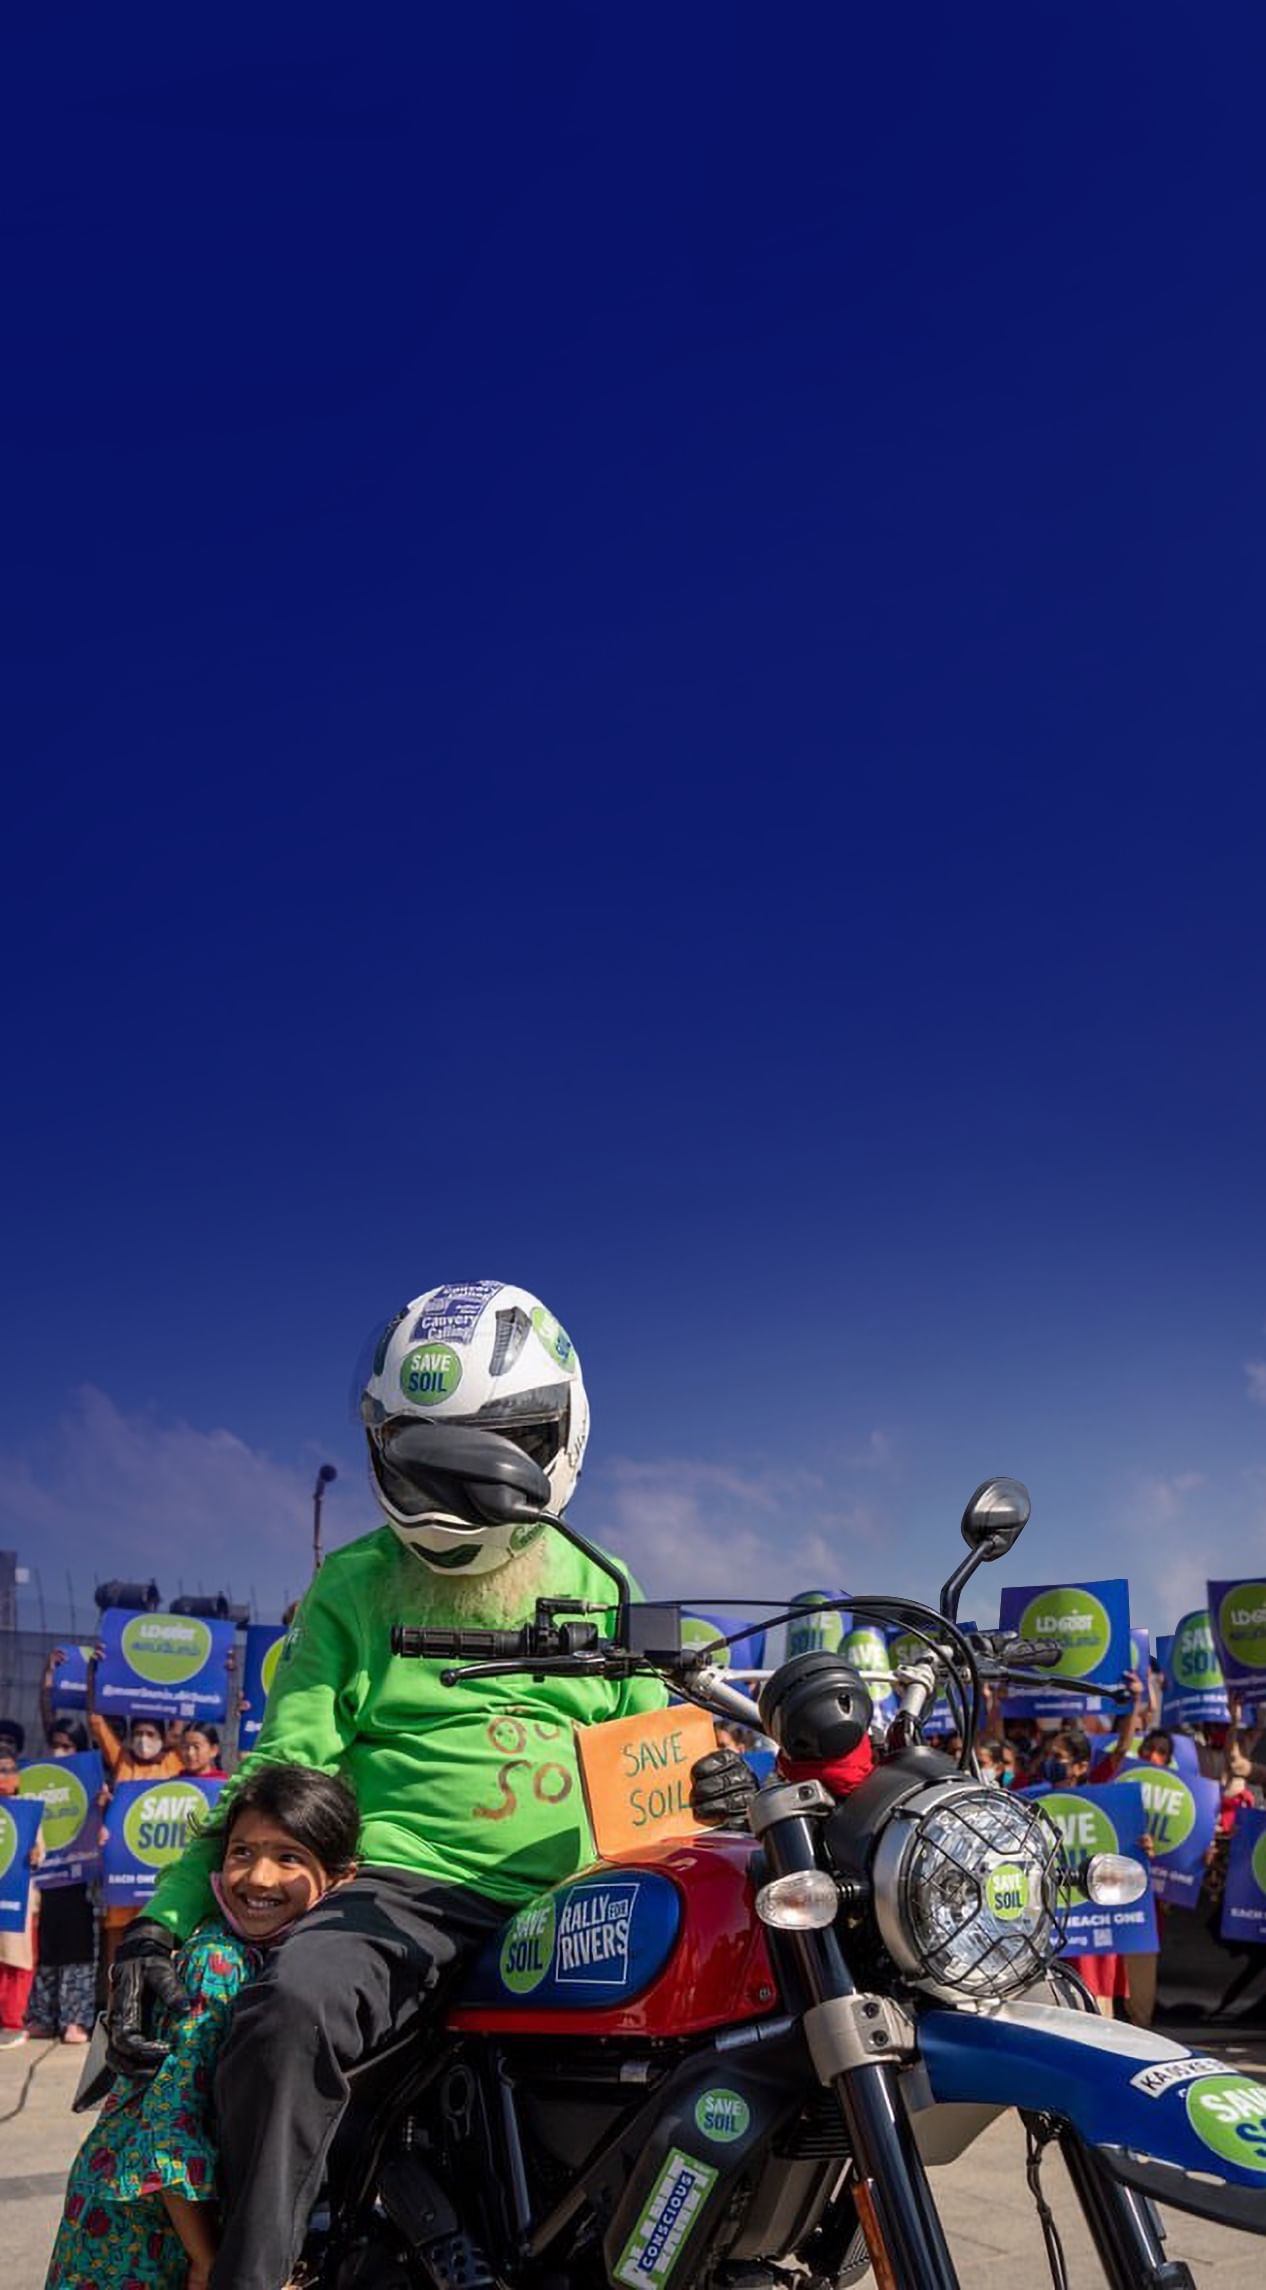 Sadhguru à moto avec un panneau « Save Soil (Sauvons les sols) », aux côtés d'un enfant